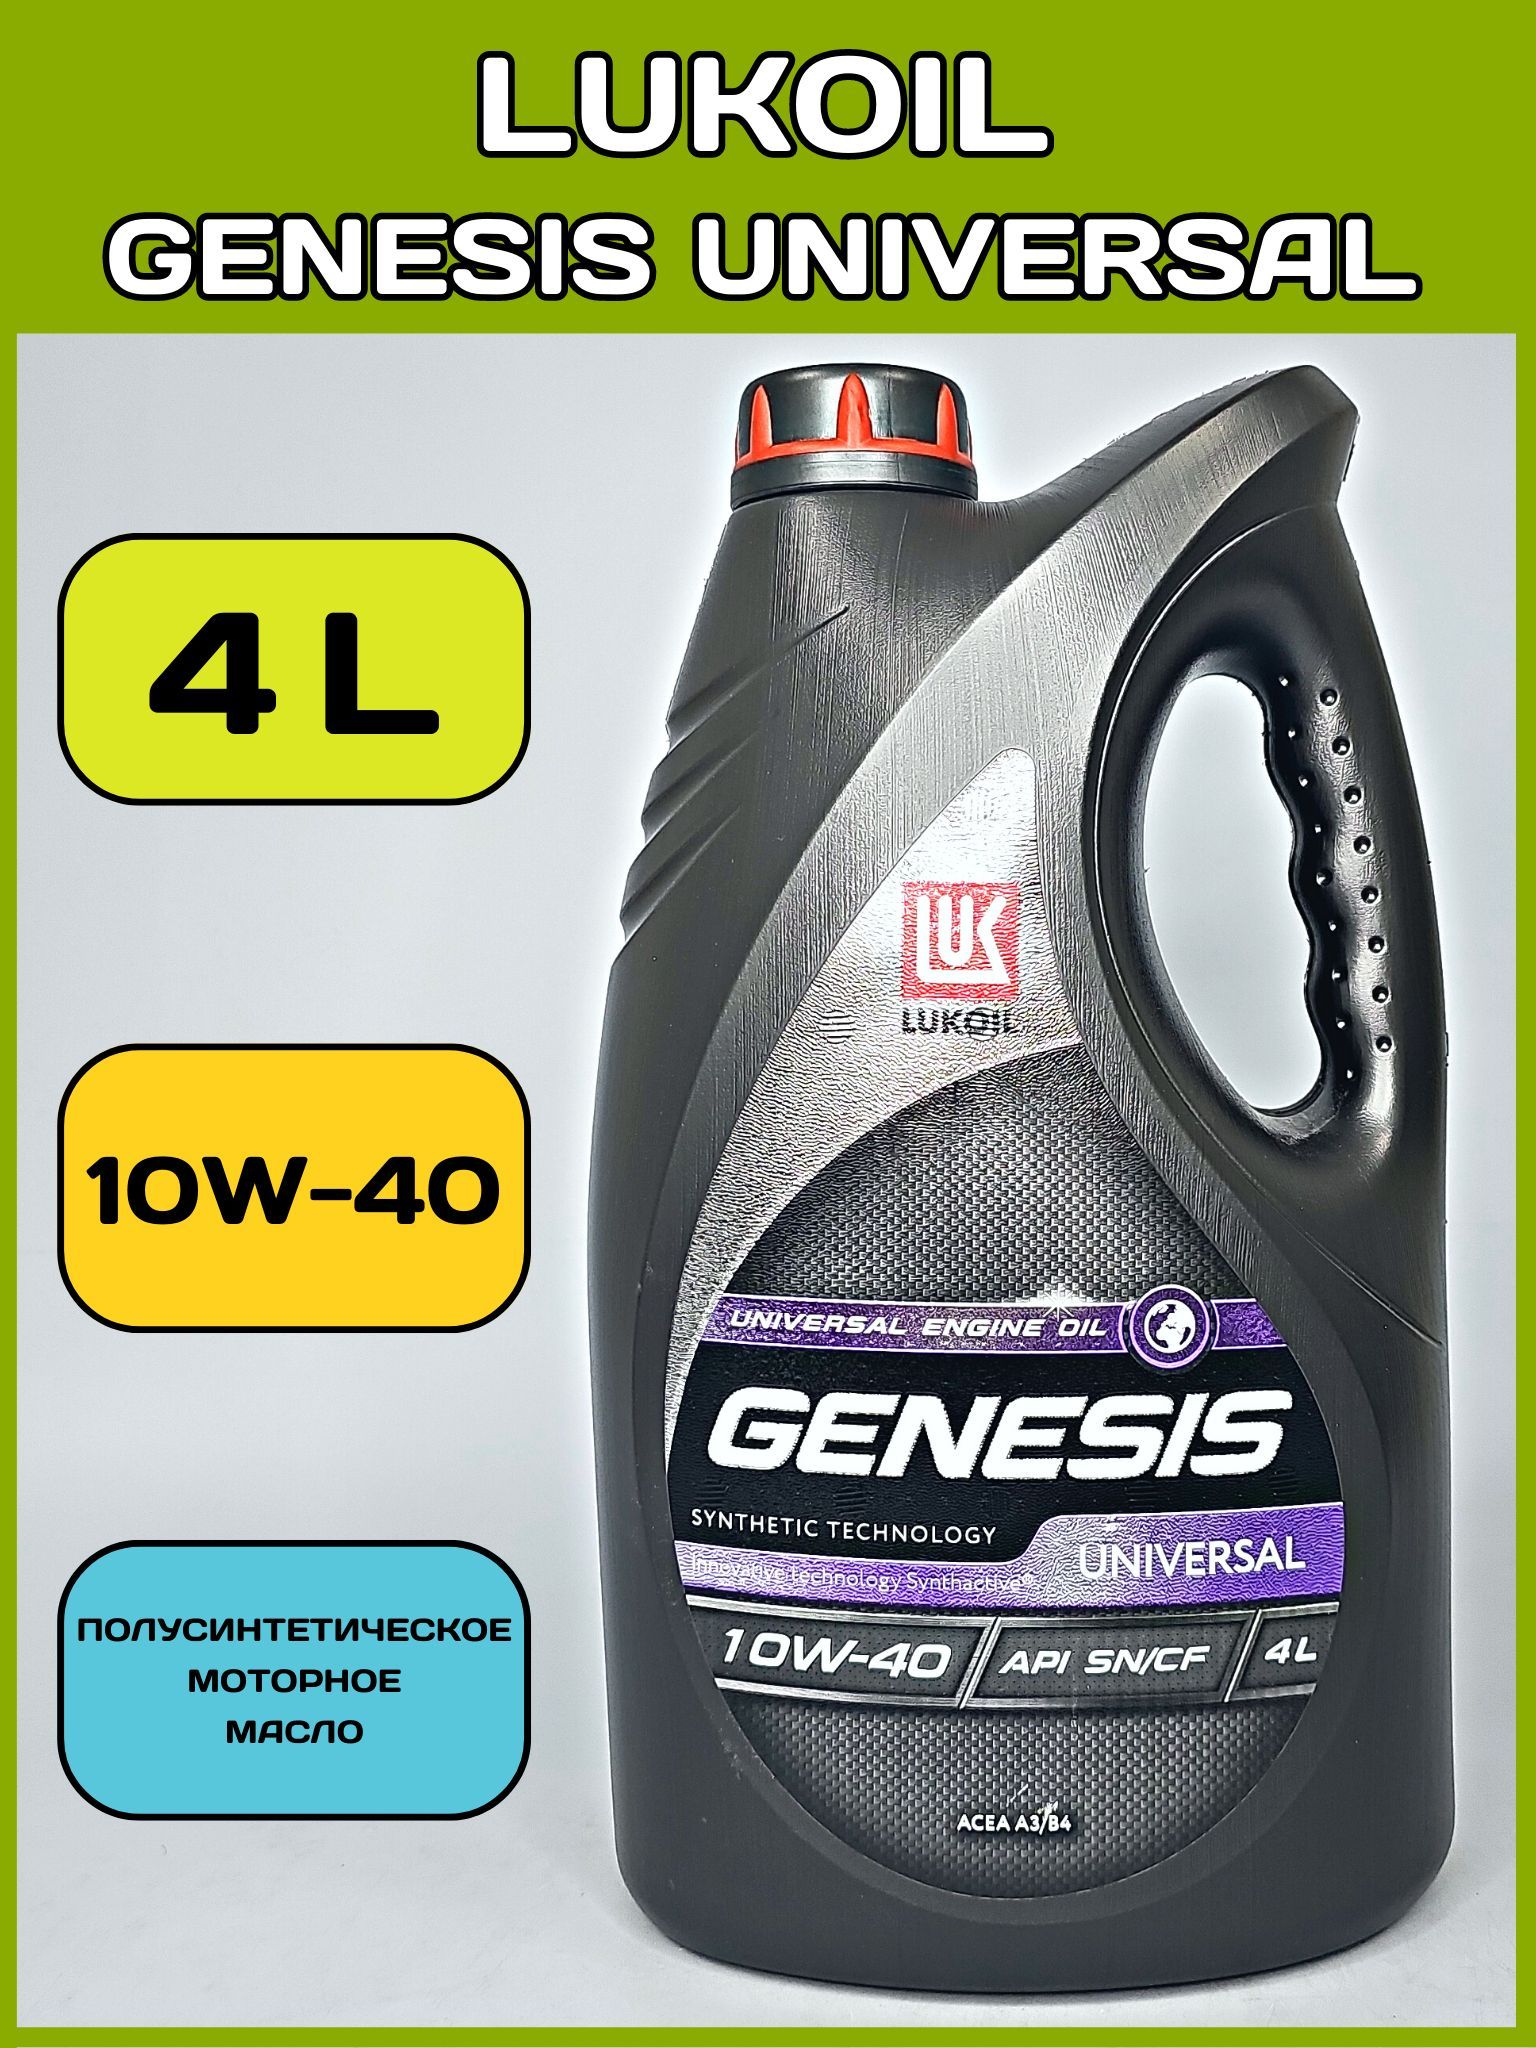 Лукойл генезис универсал отзывы. Генезис универсал 10w 40 полусинтетика характеристики. Универсальная масло м 8 в.